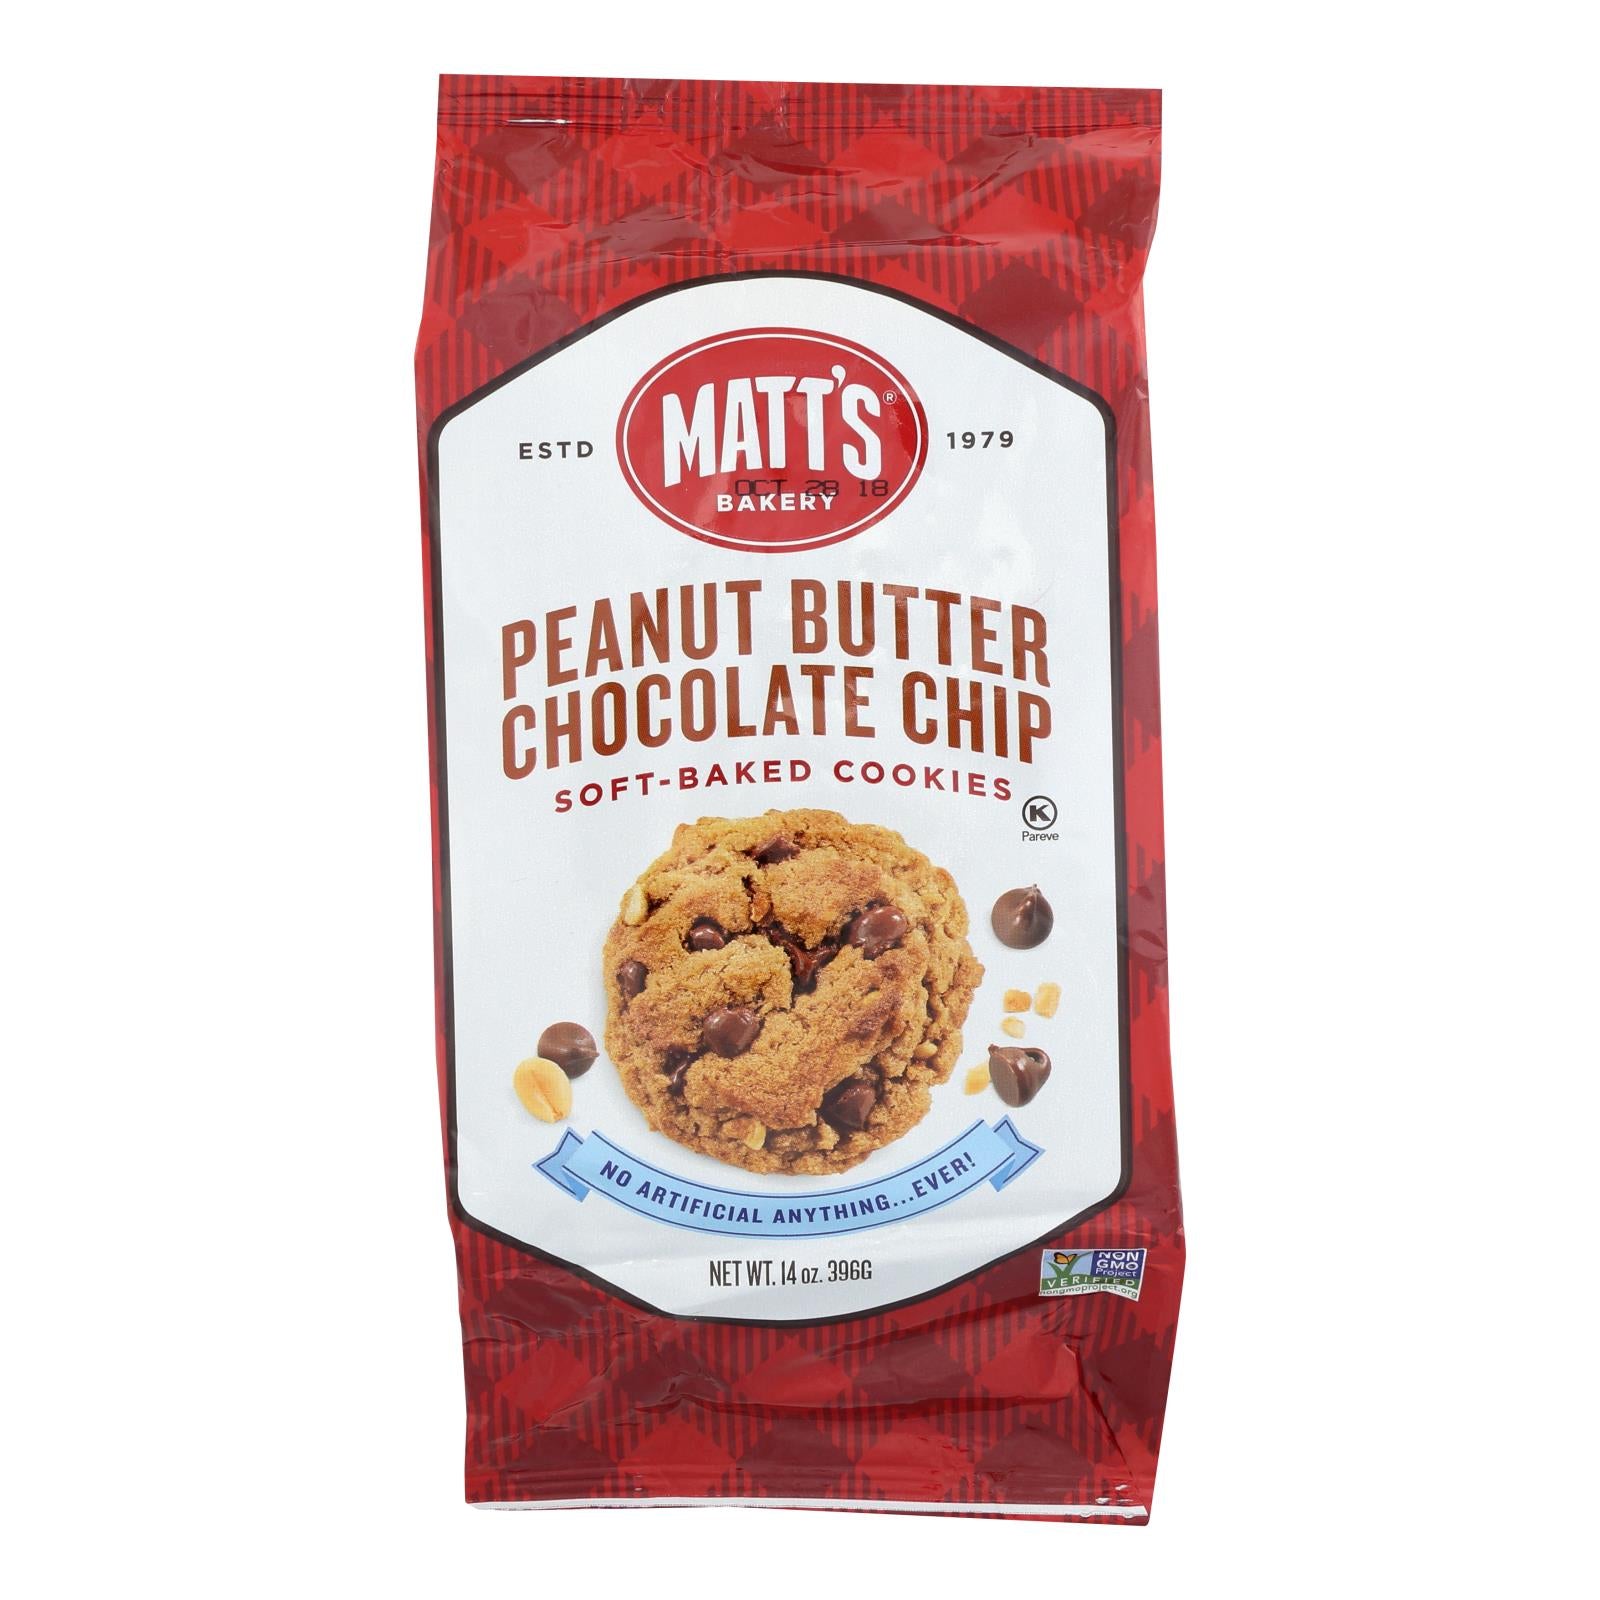 Biscuits de Matt, Biscuits Matt's - Biscuits au beurre d'arachide et aux pépites de chocolat - caisse de 6 - 14 OZ (paquet de 6)